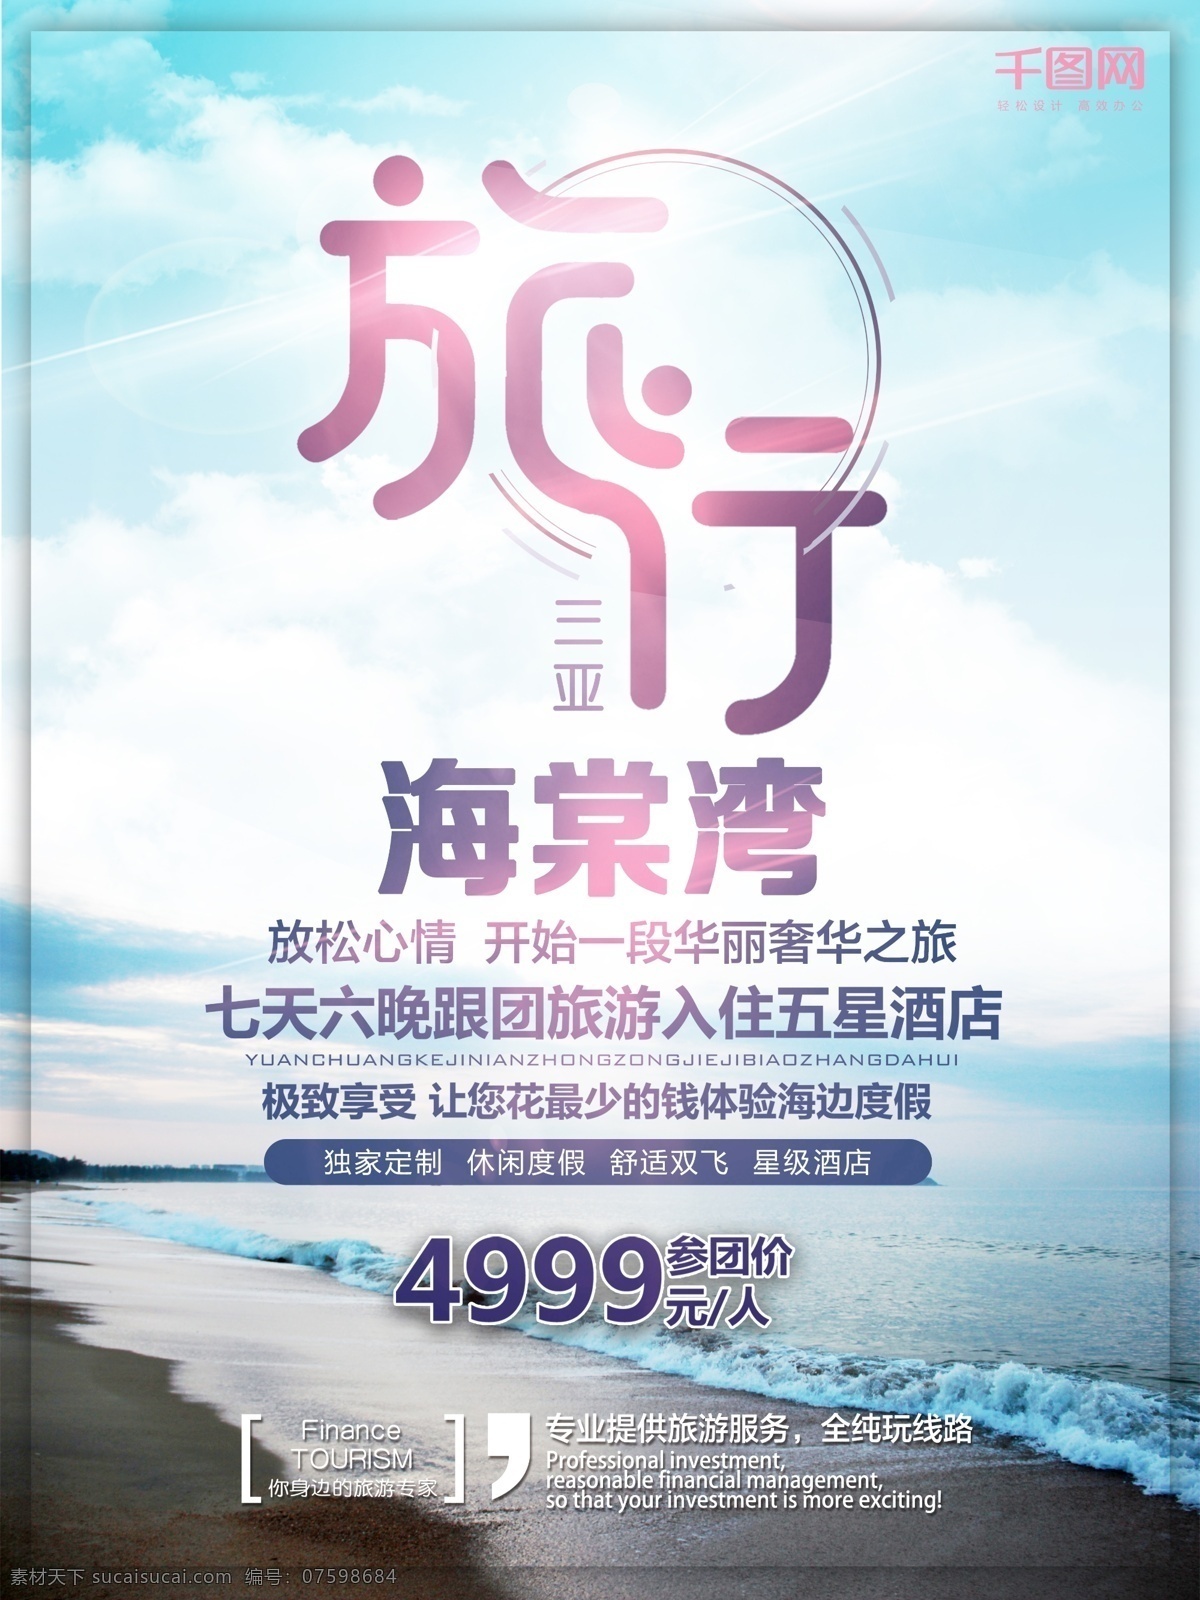 三亚 海棠 湾 旅游 旅行 三亚旅行海报 风景 海边旅行海报